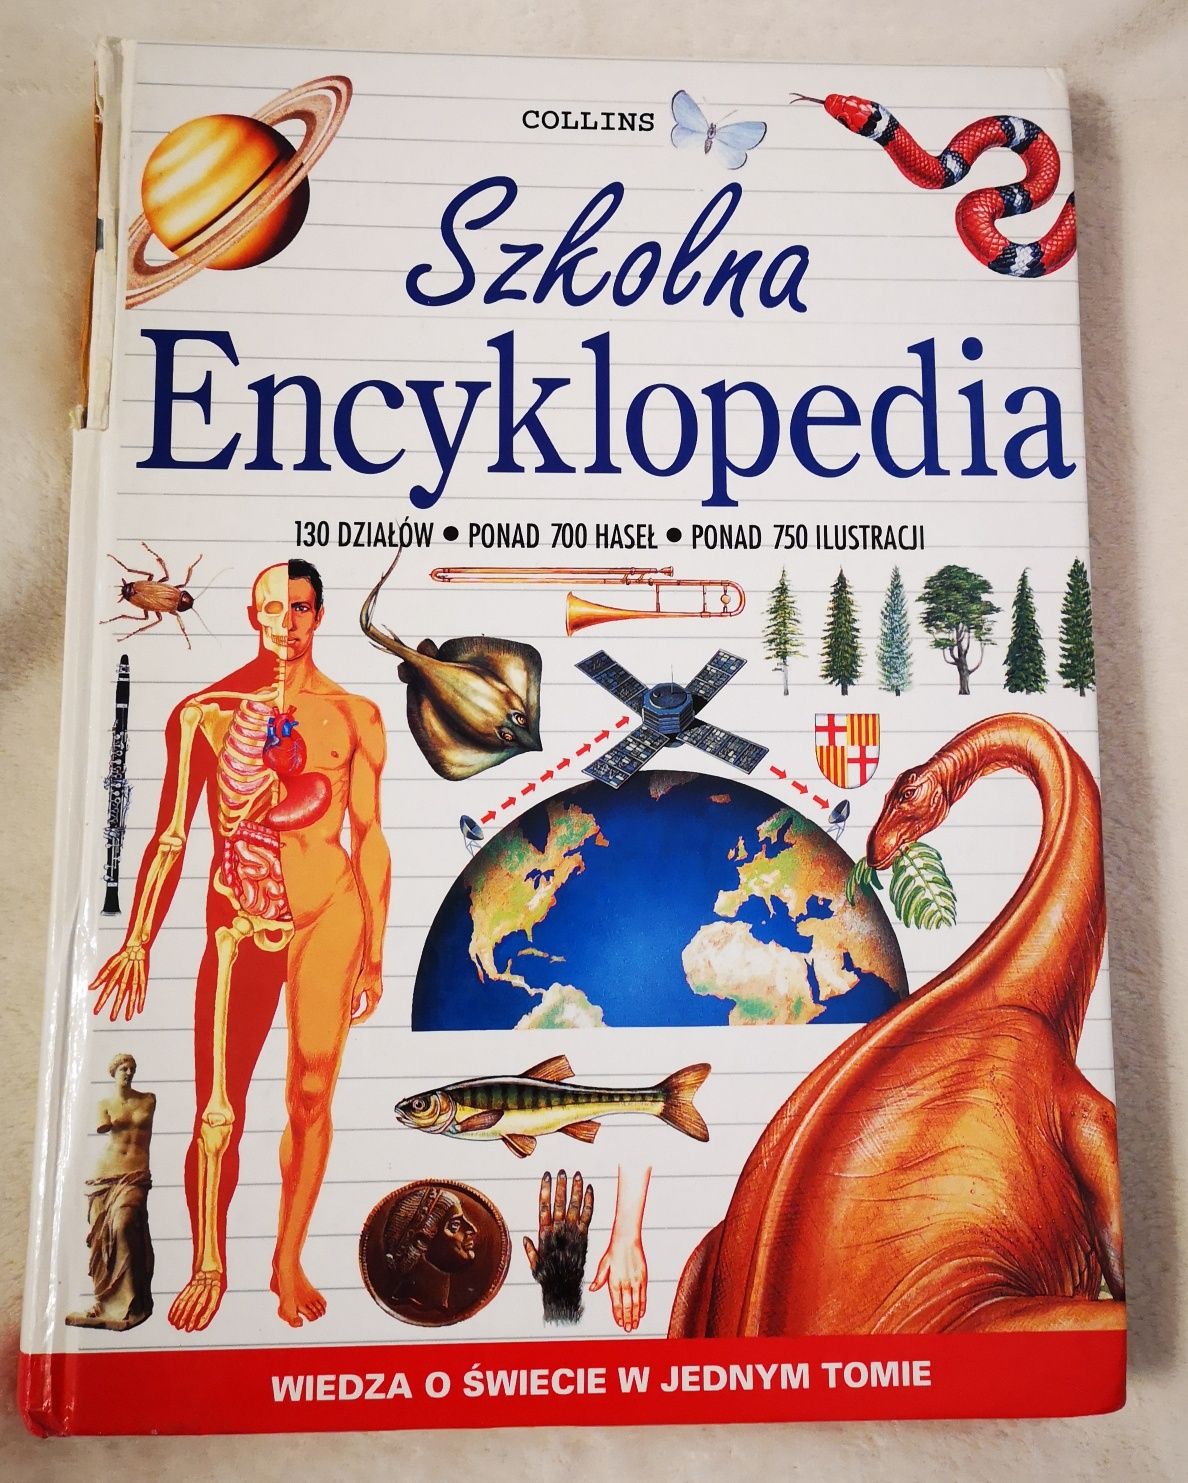 Szkolna encyklopedia